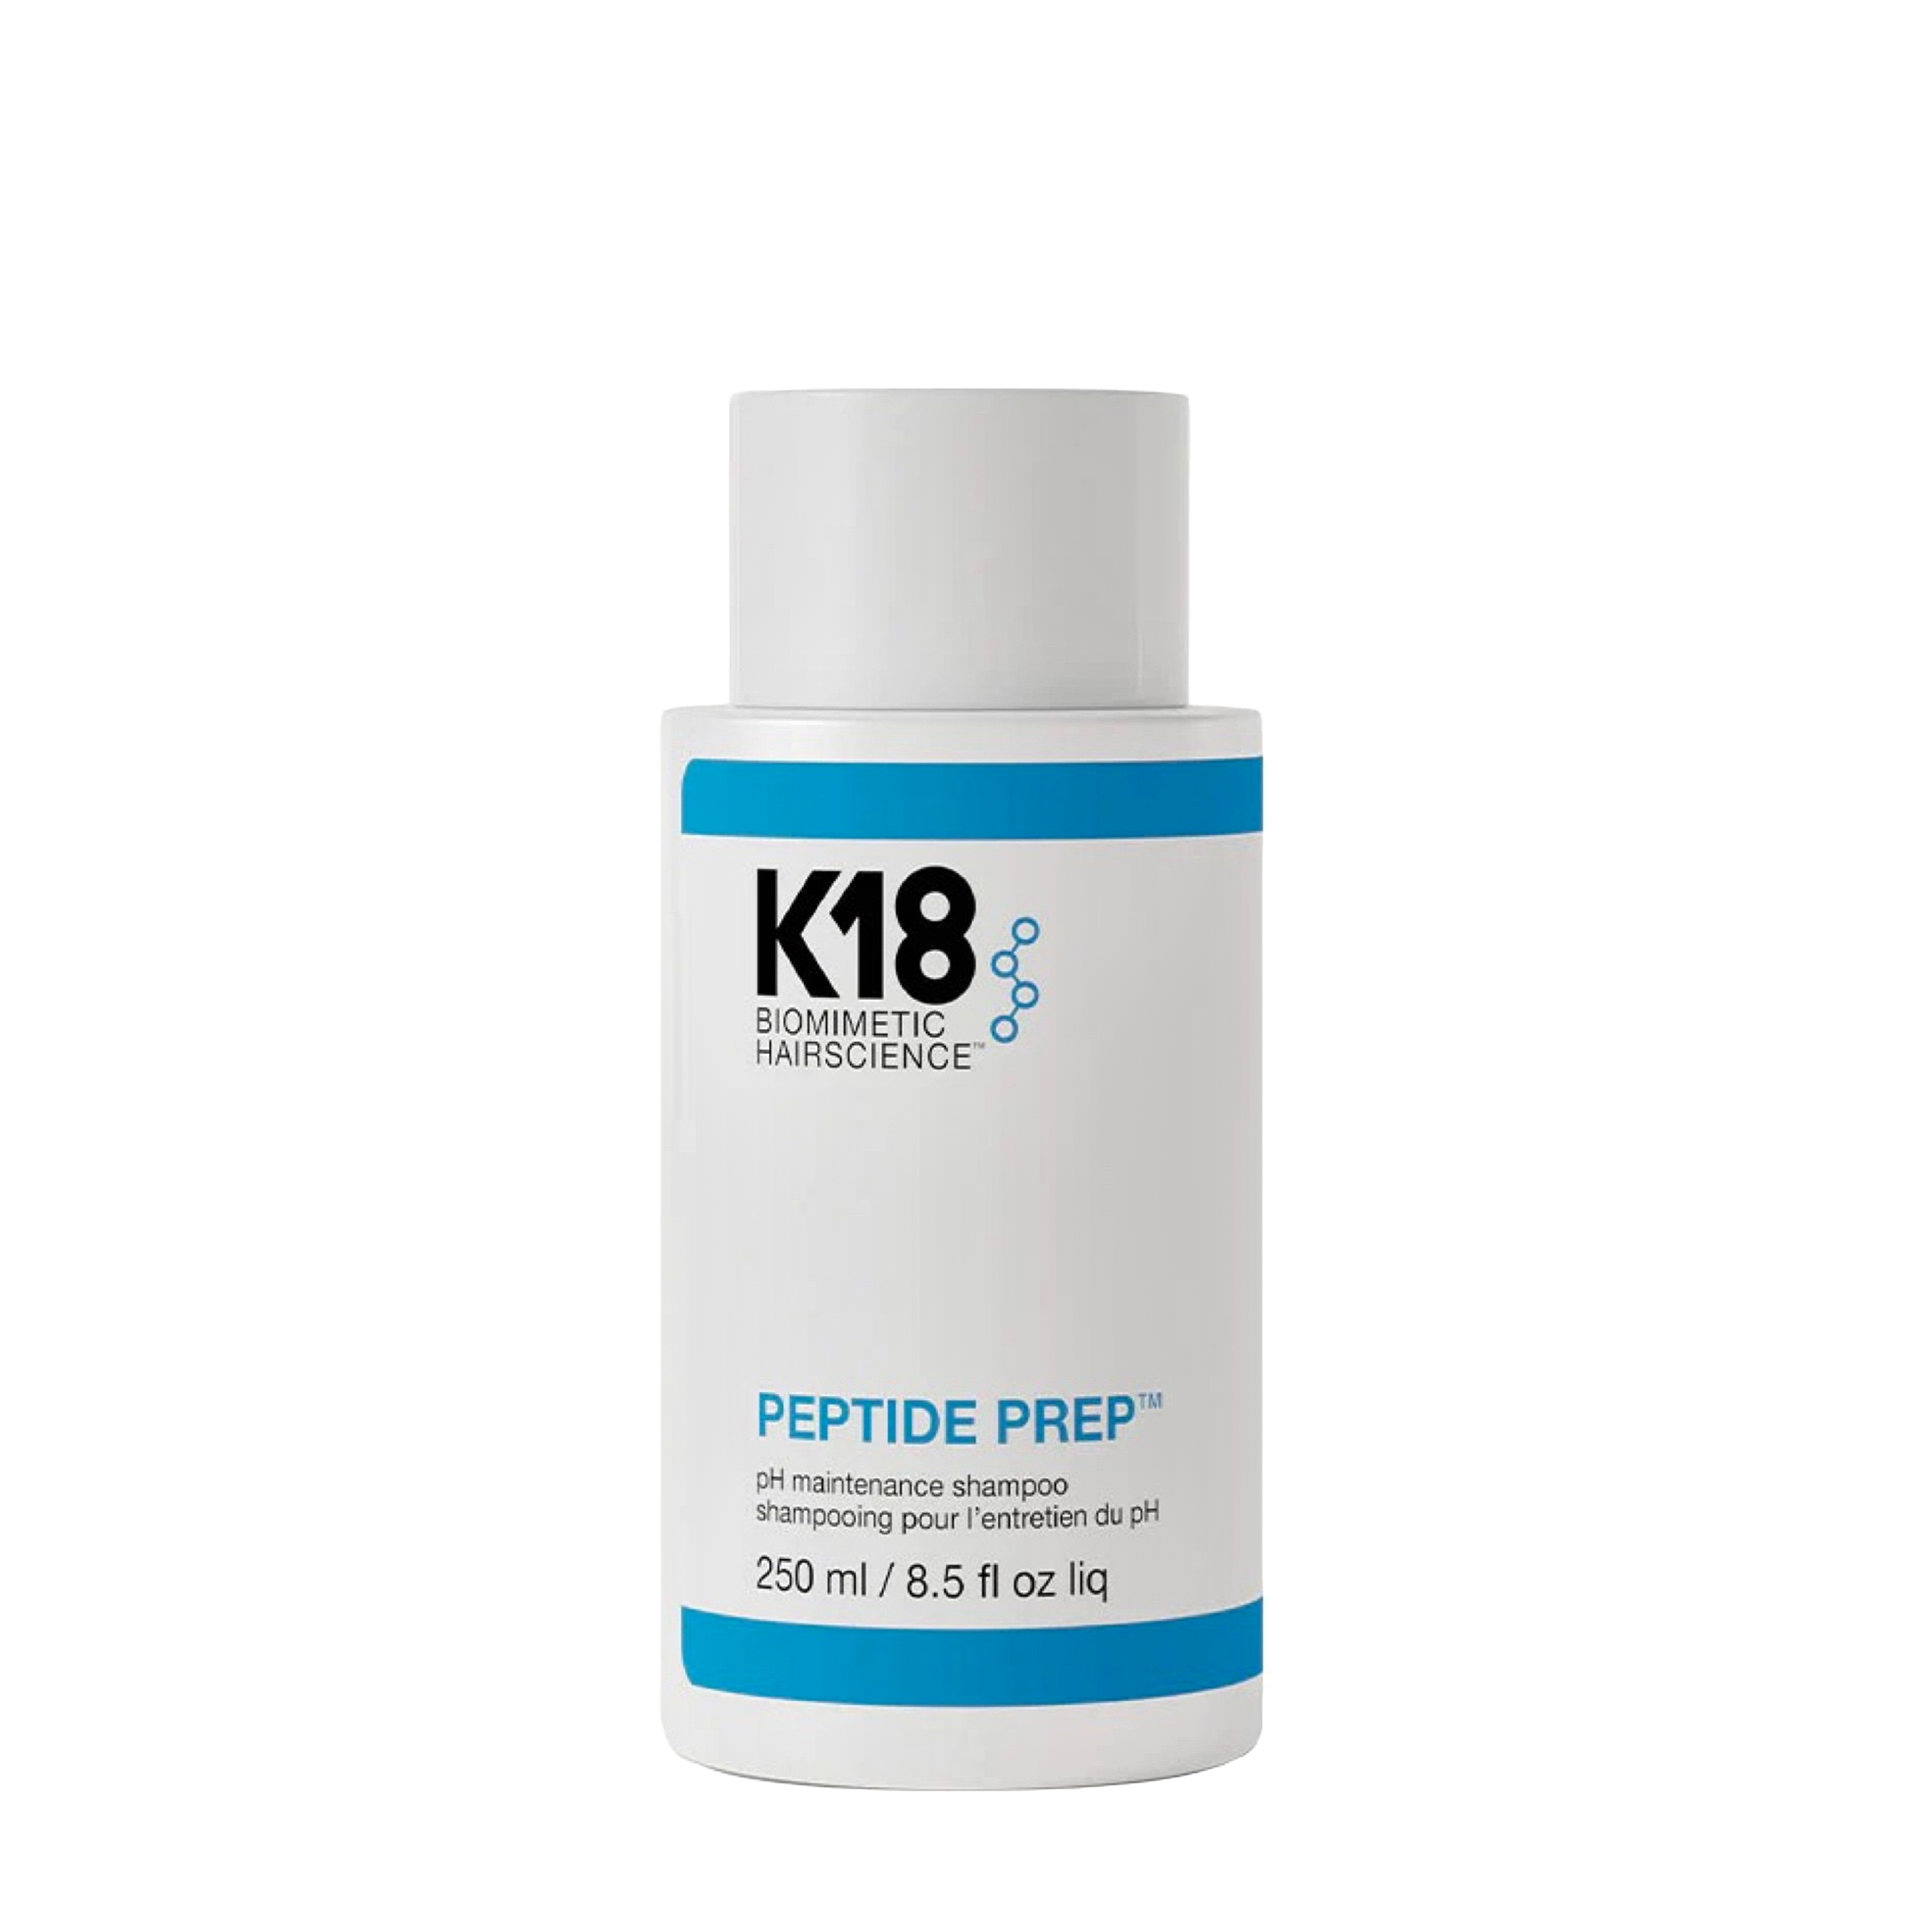 K18 K18 pH maintenance shampoo / Шампунь pH Баланс 250 мл 250 мл K18-40025 pH maintenance shampoo / Шампунь pH Баланс 250 мл 250 мл - фото 1